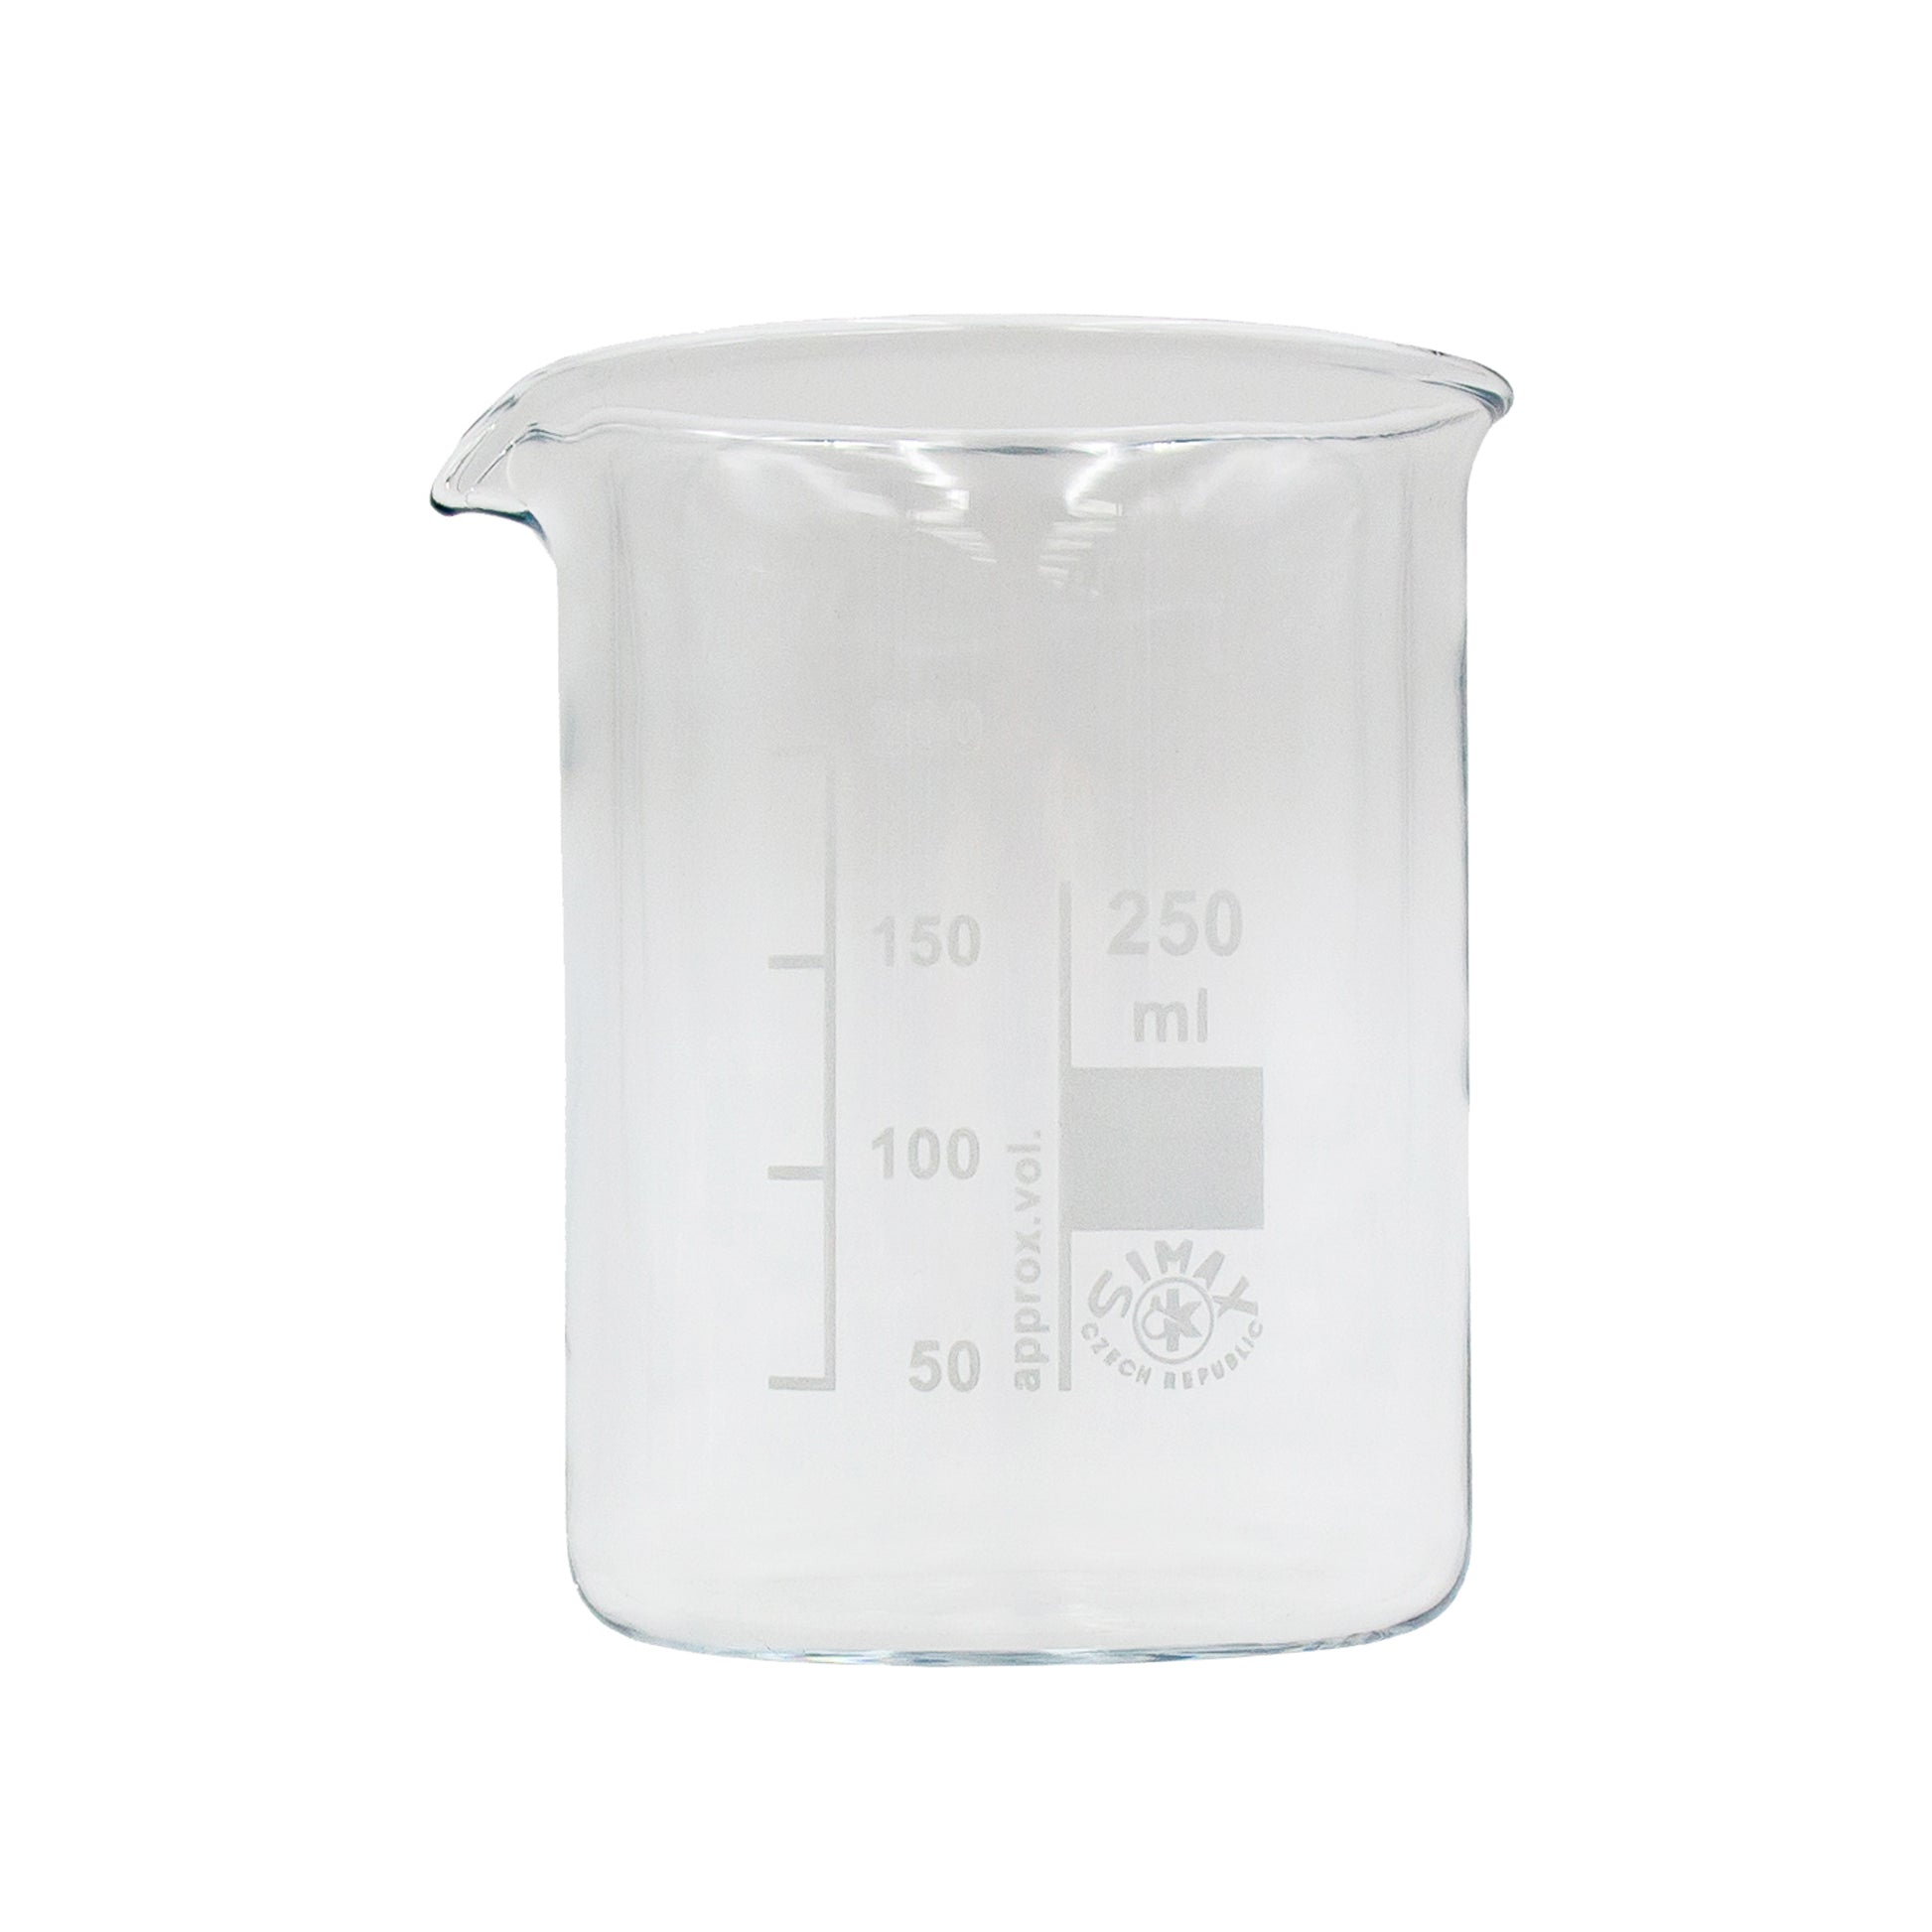 250ml glass beaker. 50ml increase